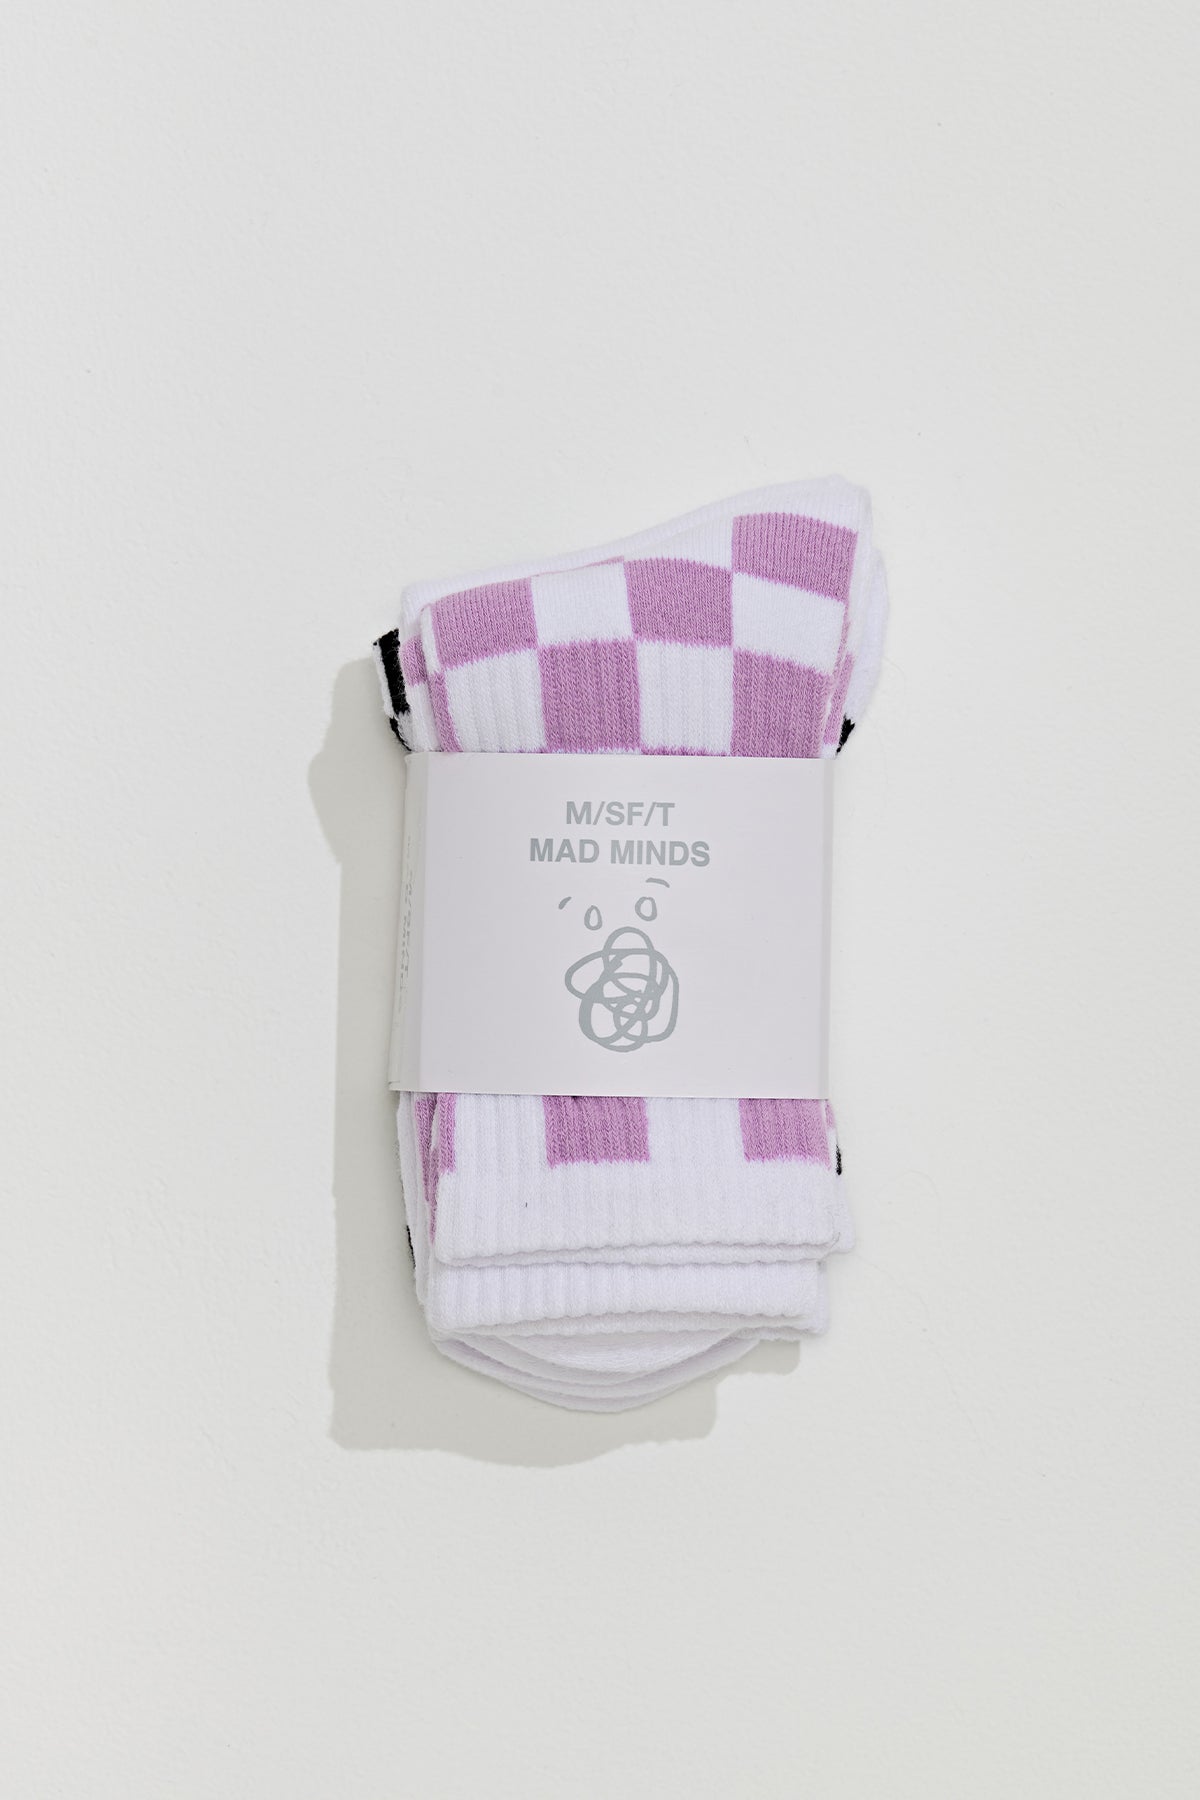 Misfit Shapes - Her Form 3Pk Sock - Multi Coloured